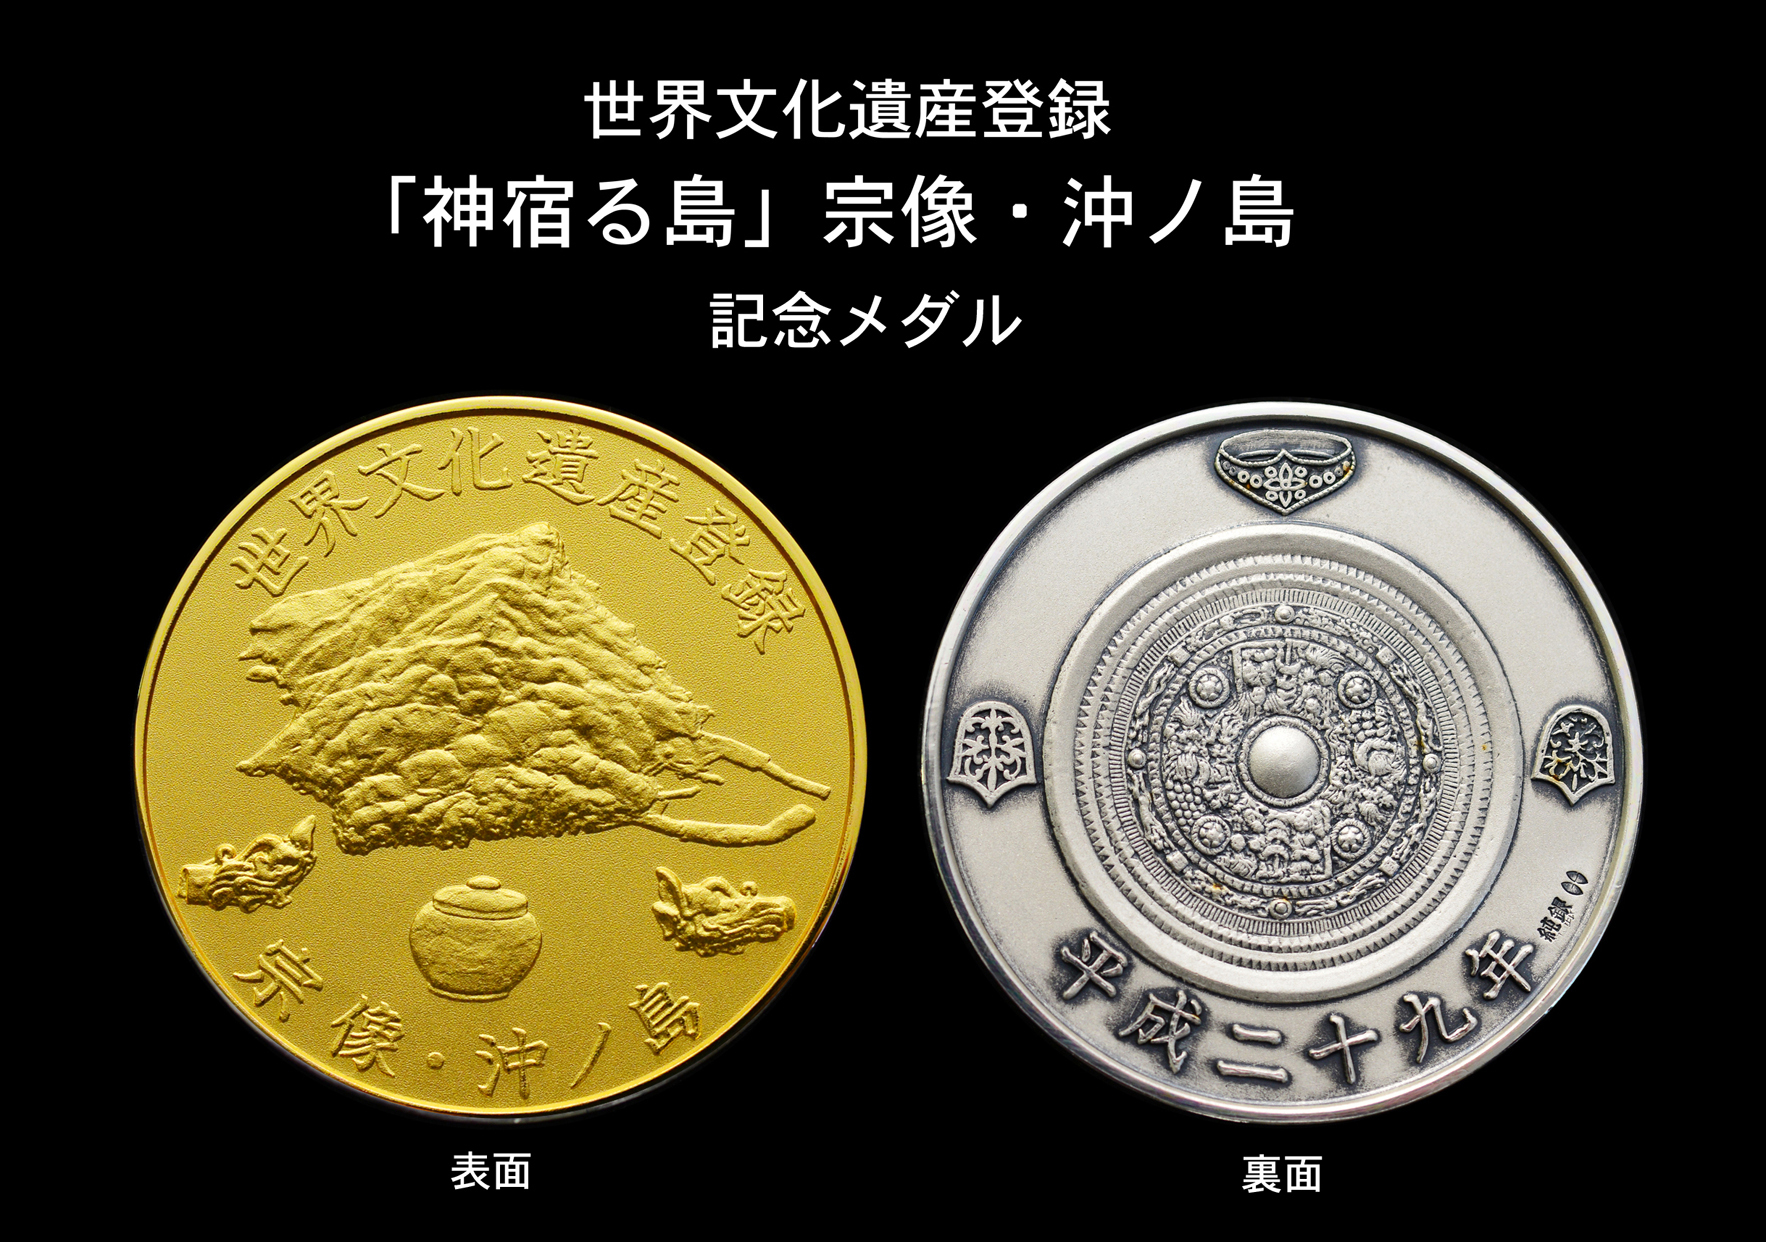 ＵＮＥＳＣＯ ２５周年記念メダル ＜純銀メダル＞ - 貨幣